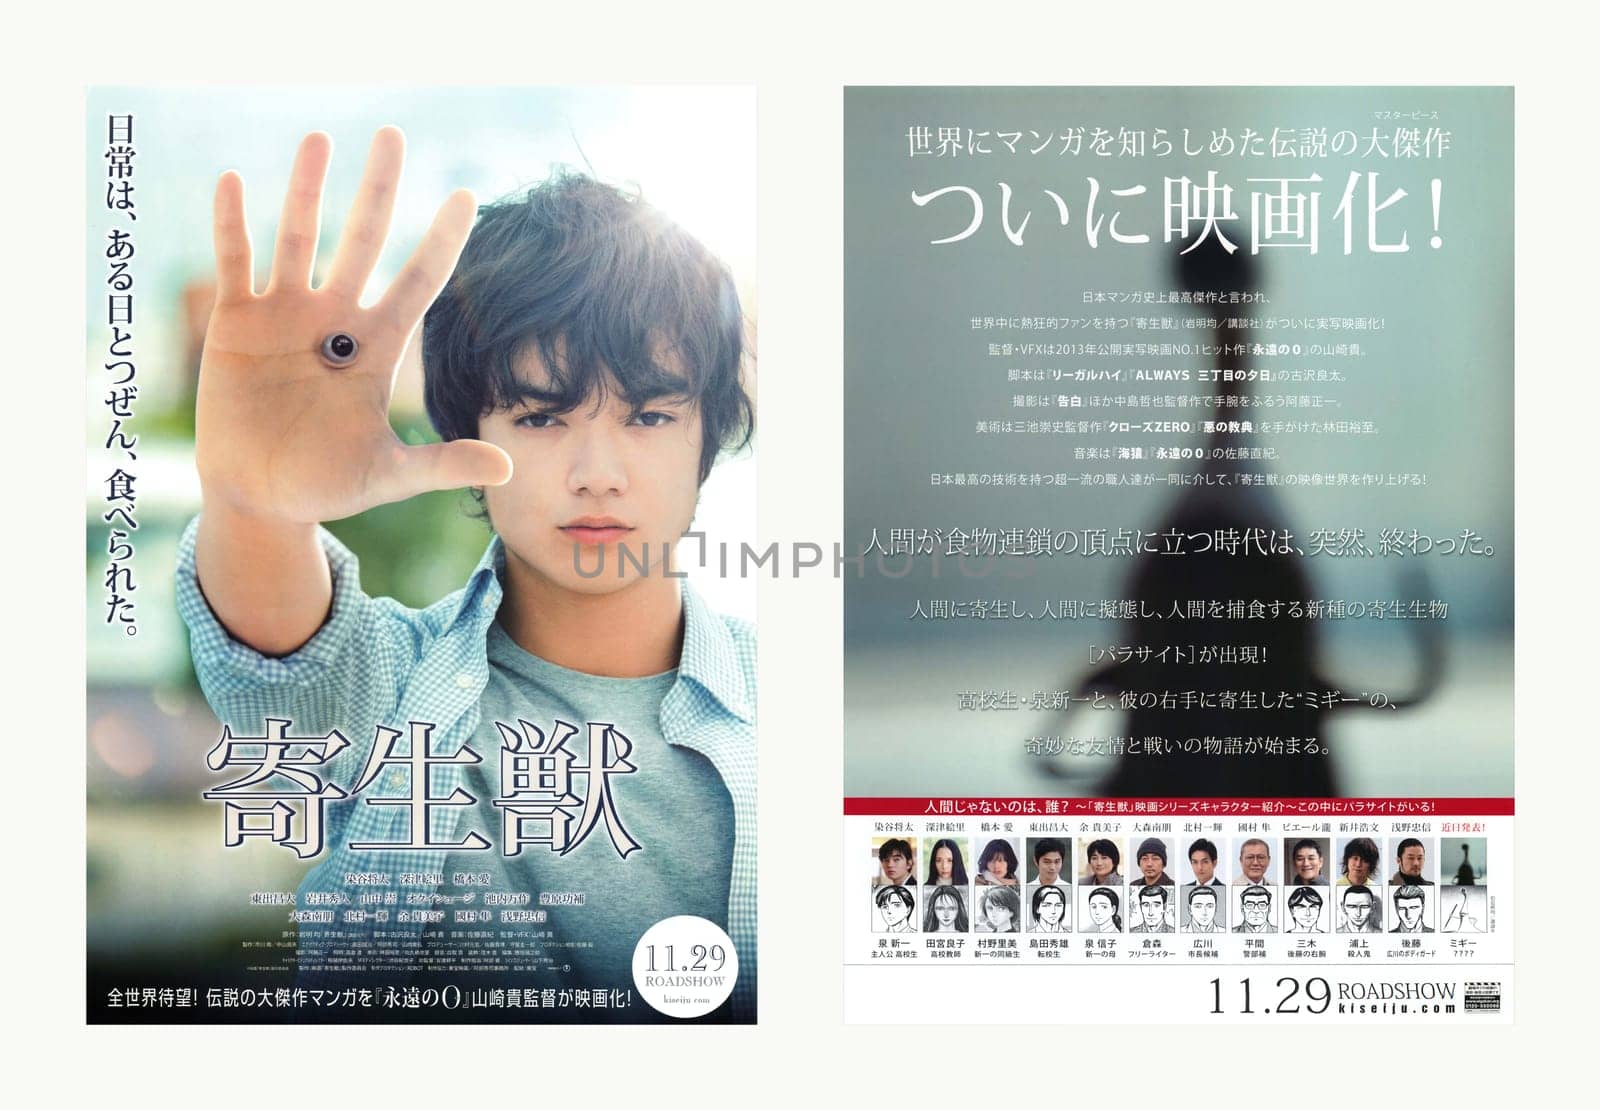 tokyo, japan - nov 29 2014: 1st teaser visual double sided leaflet of the manga based science fiction movie "Parasyte" starring Japanese actor Shota Sometani by director Takashi Yamazaki (left: front)